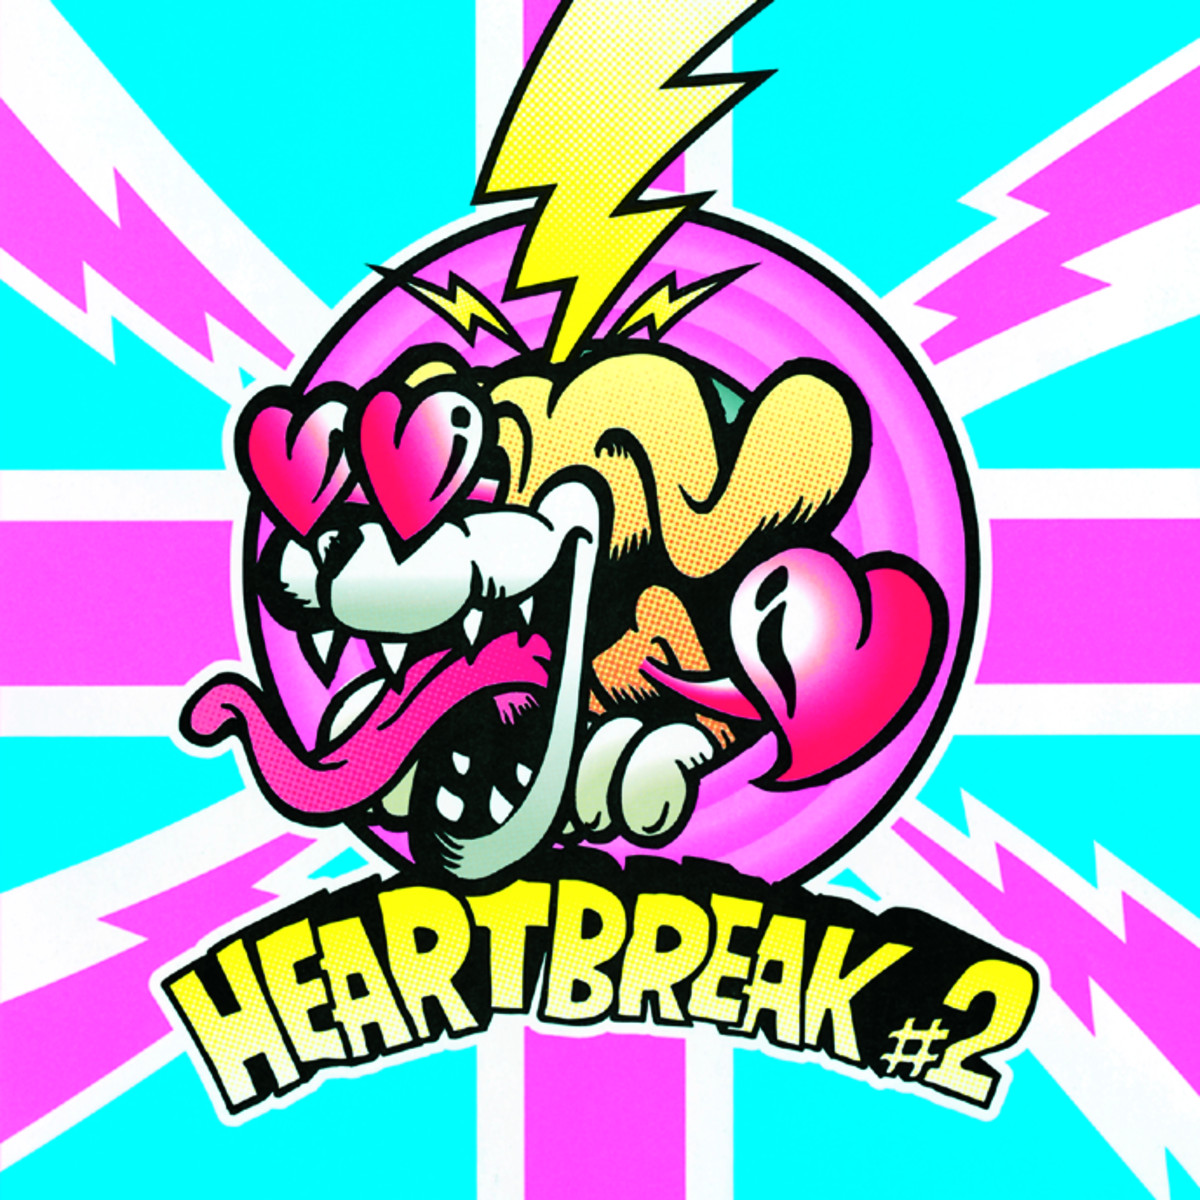 3B LAB - HEARTBREAK #2